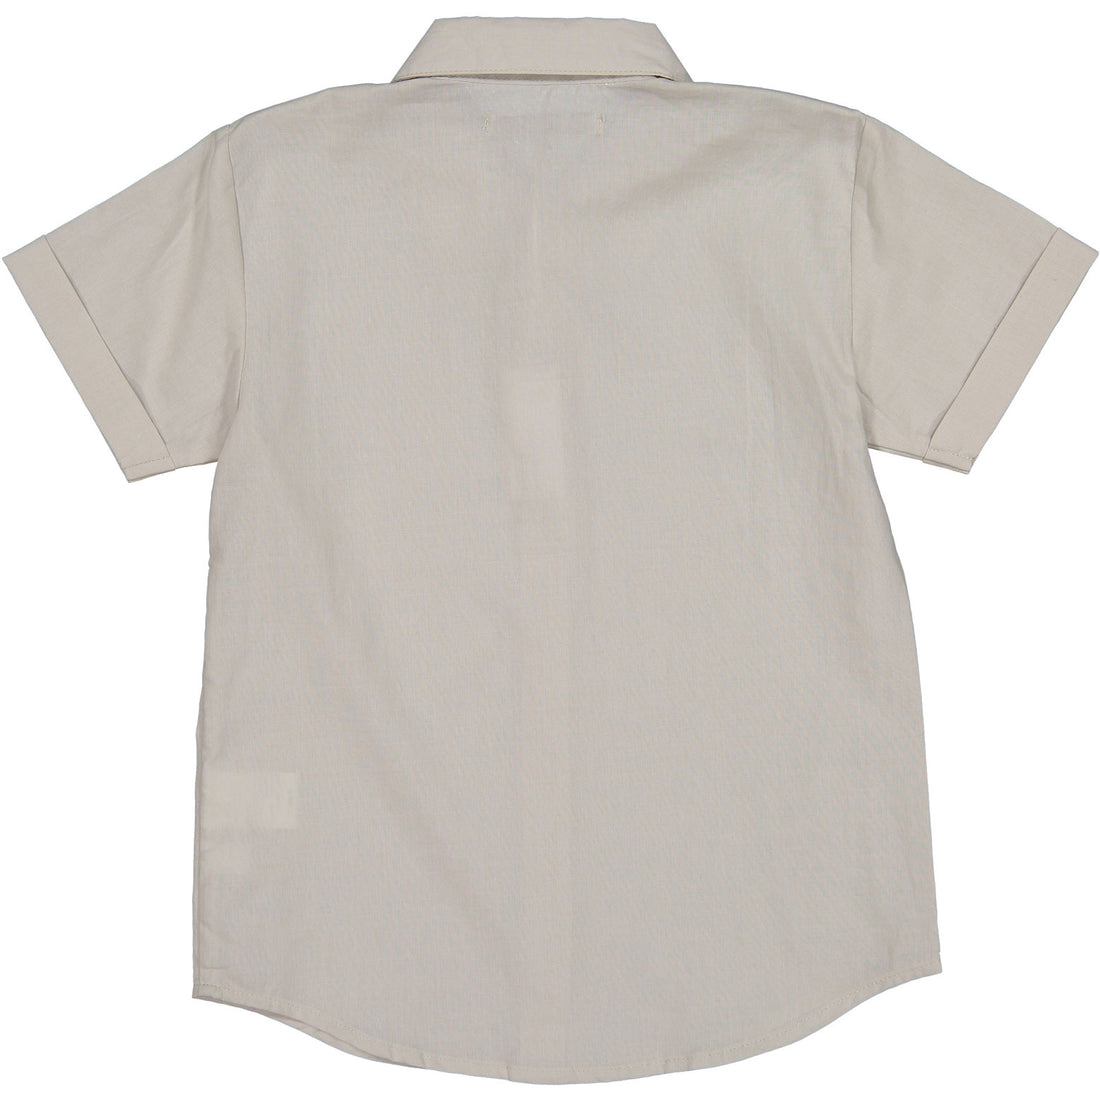 Liho Light Grey Ray Shirt